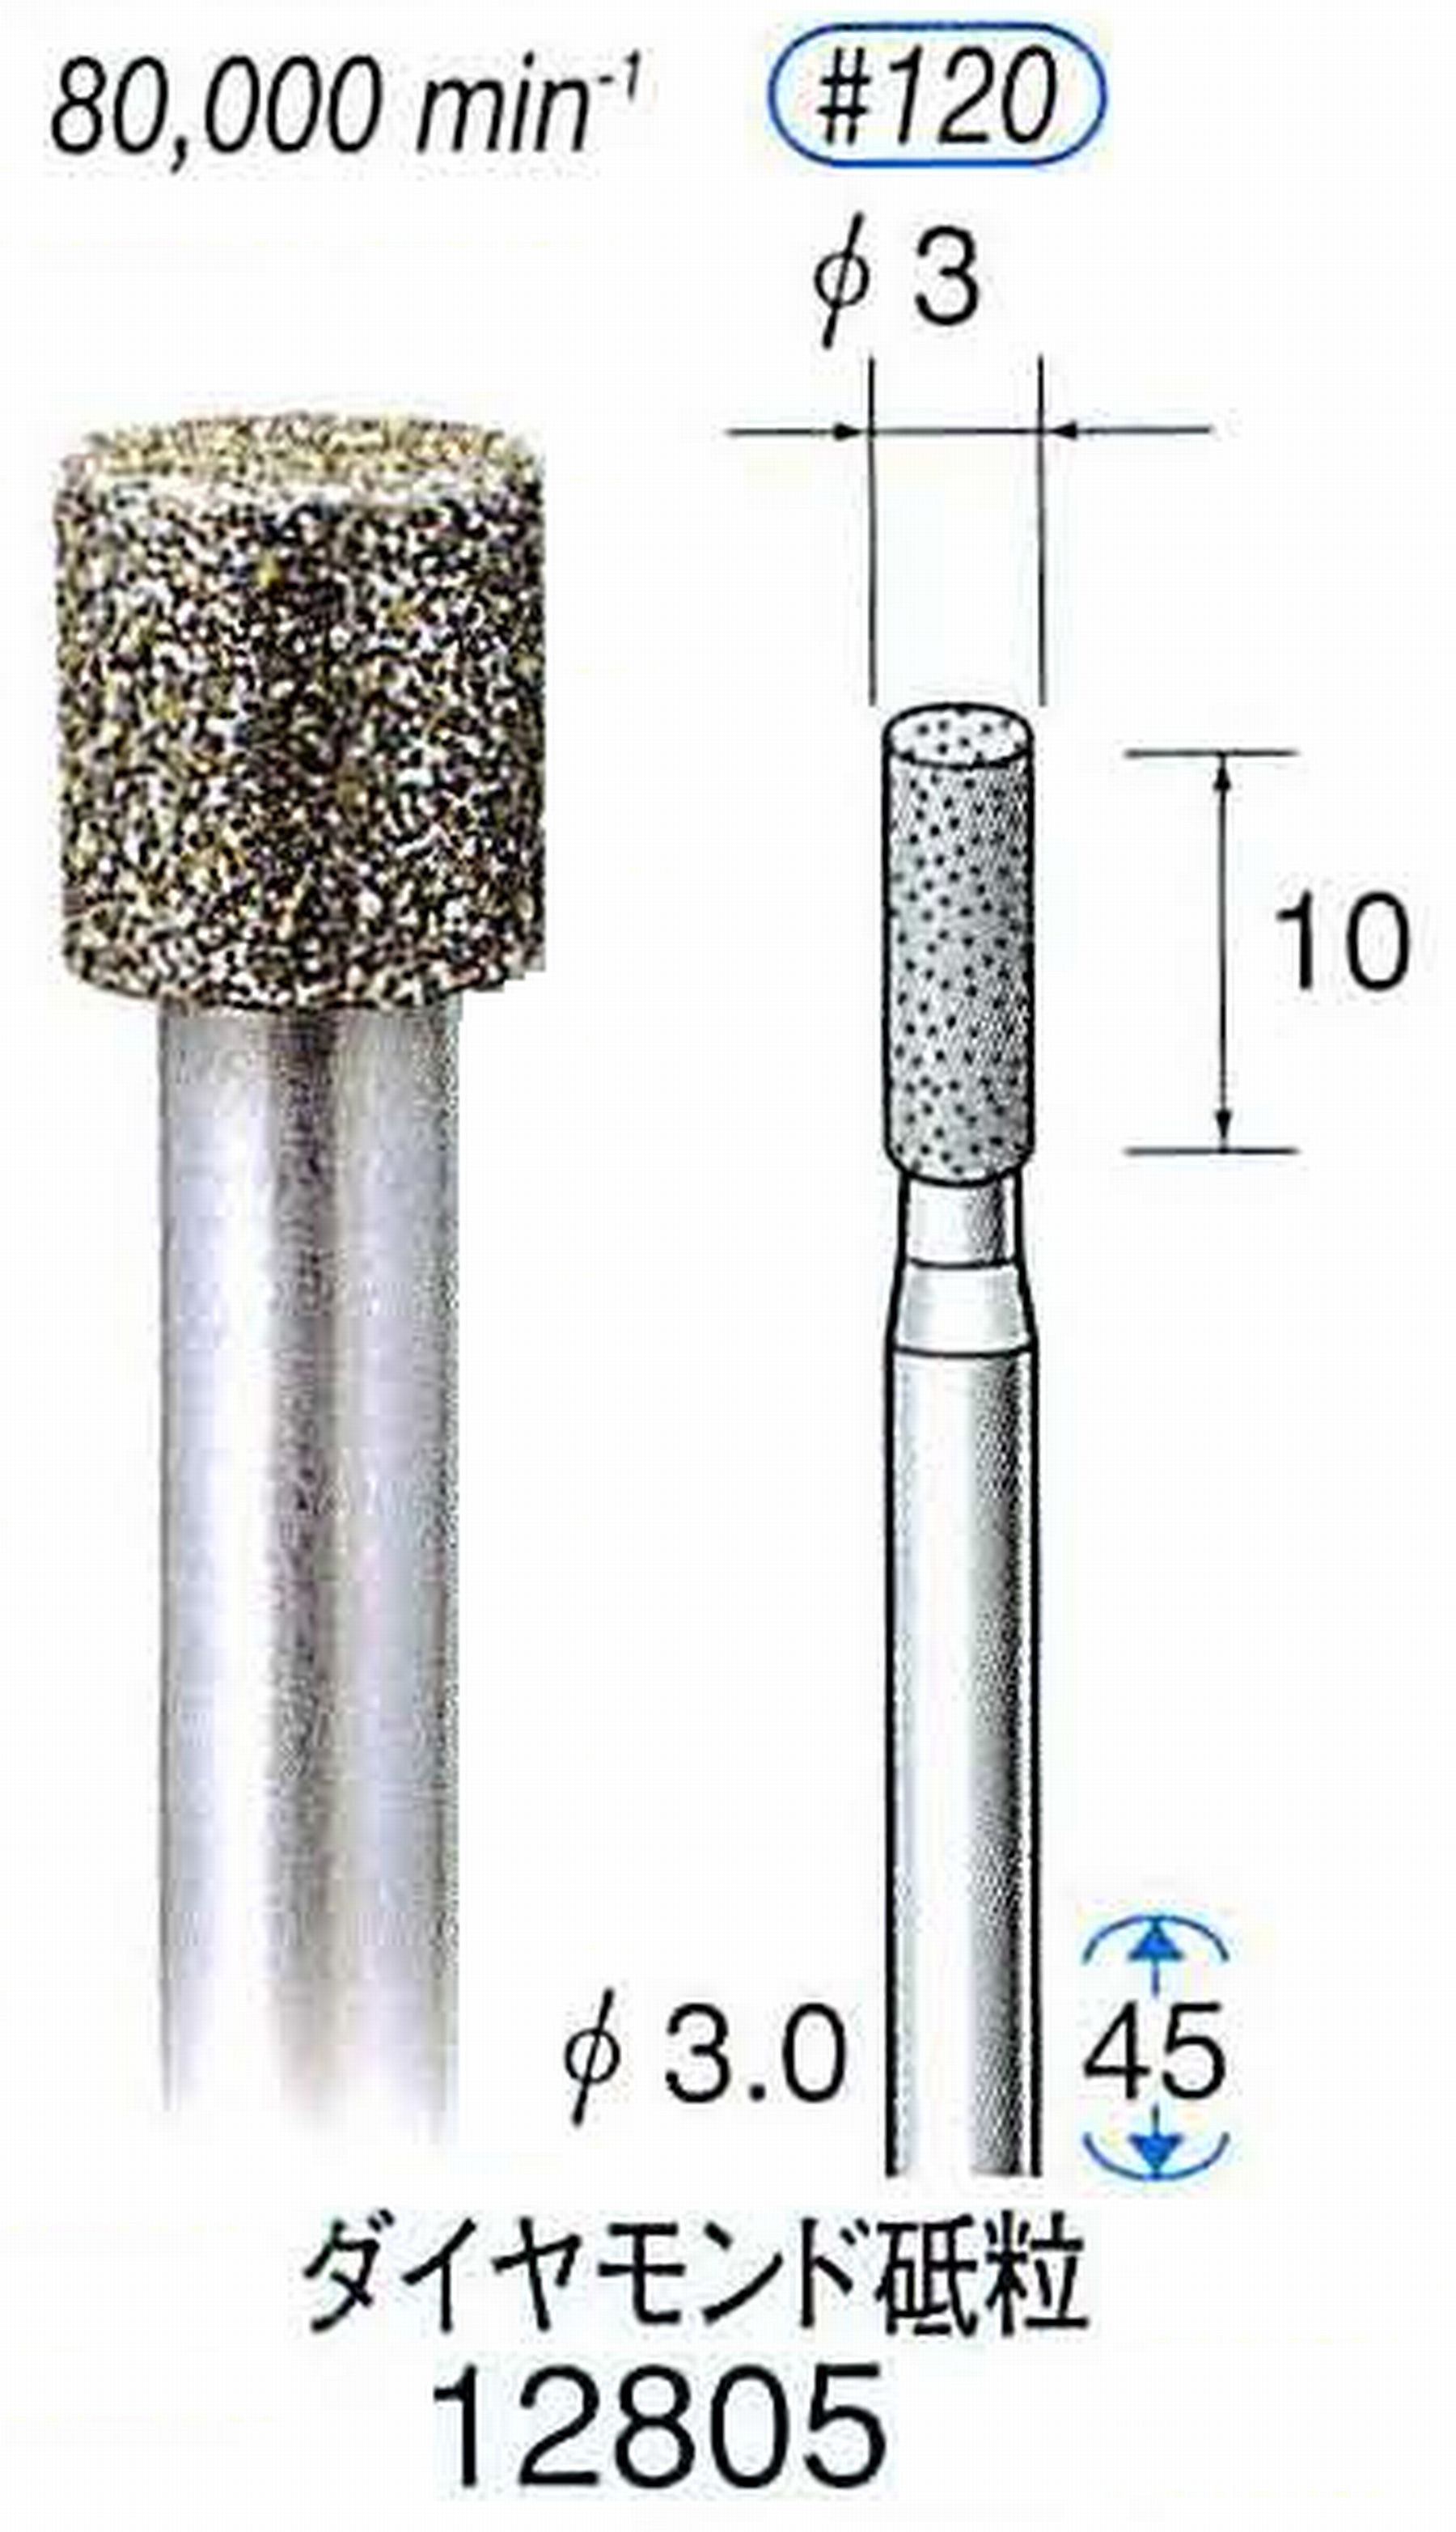 ナカニシ/NAKANISHI クラフト・ホビー用ダイヤモンドバー ダイヤモンド砥粒 軸径(シャンク)φ3.0mm 12805